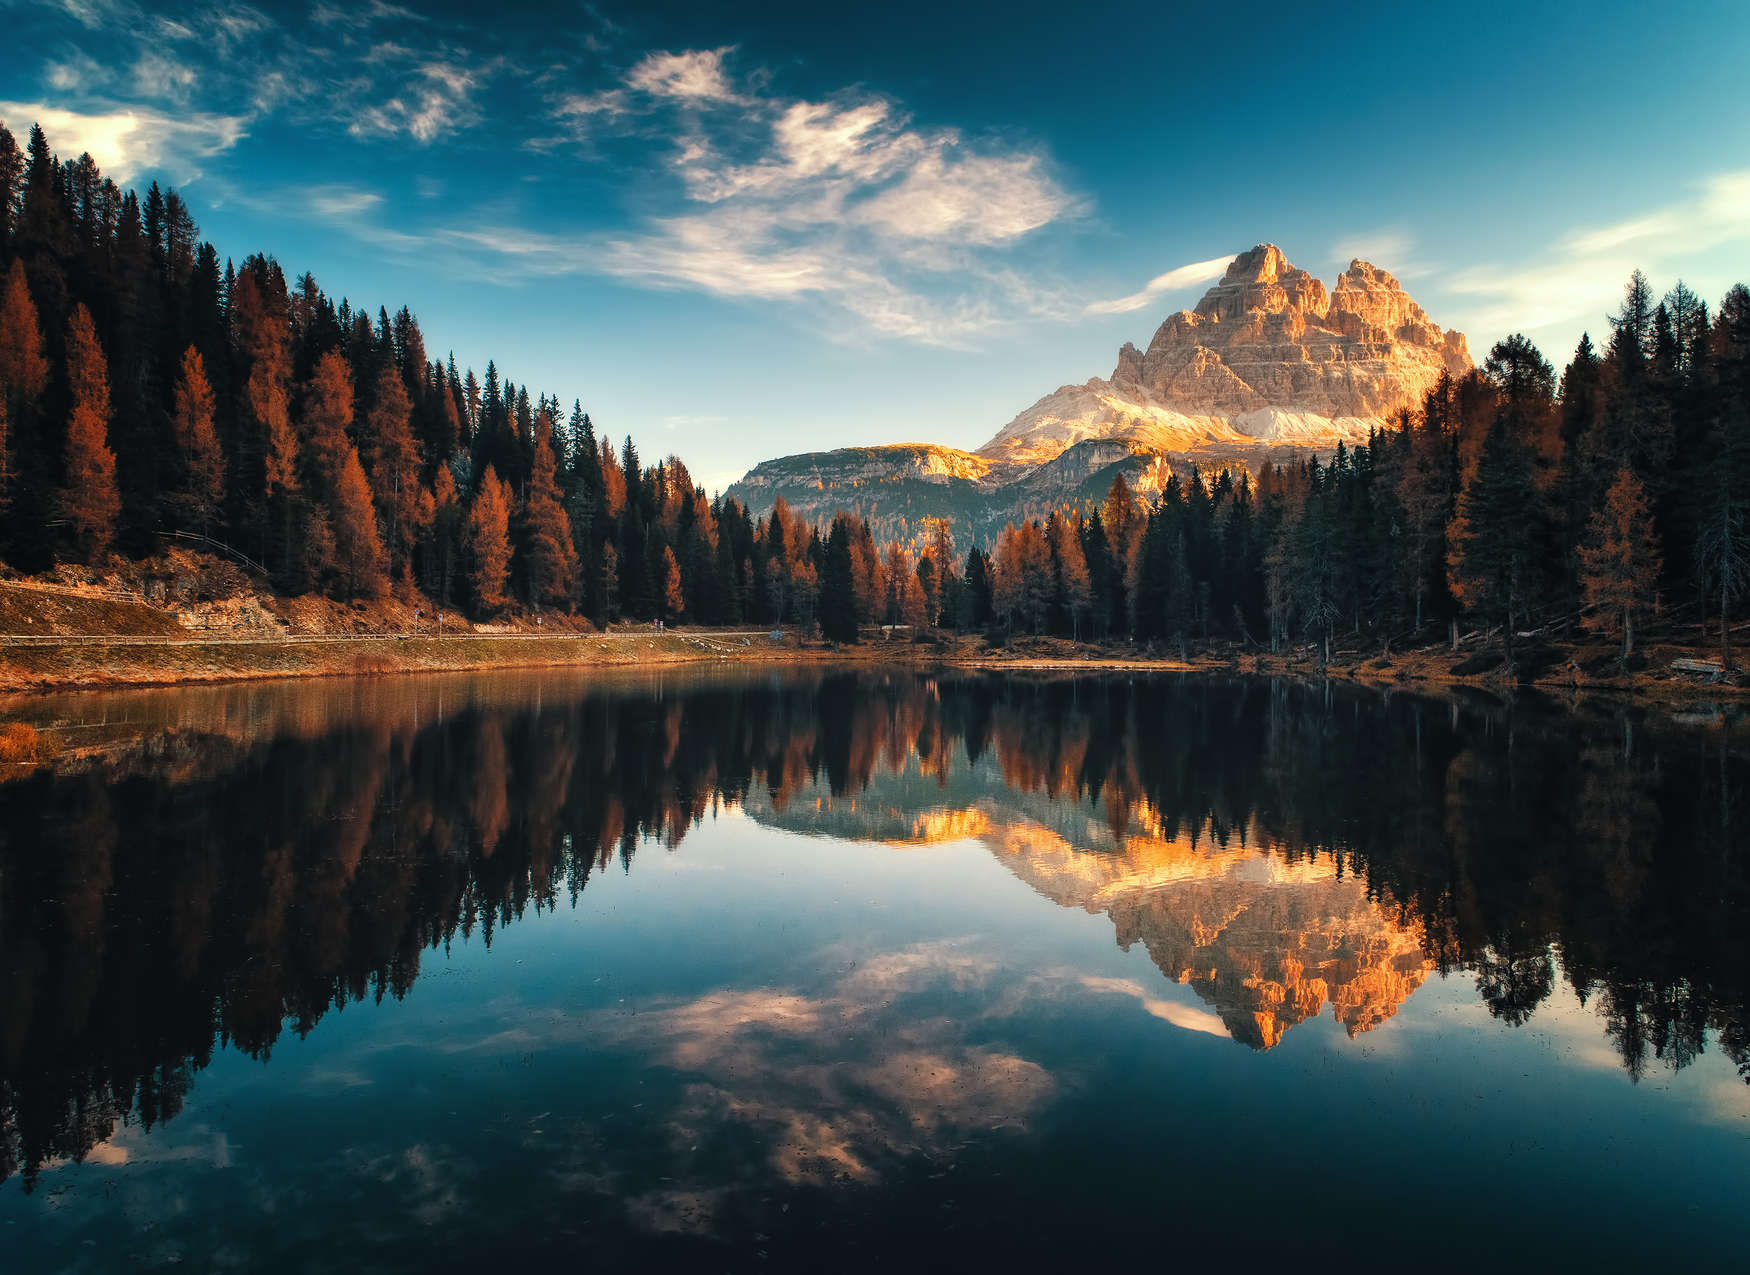             Fotomurali con paesaggio montano e lago - verde, blu, colorato
        